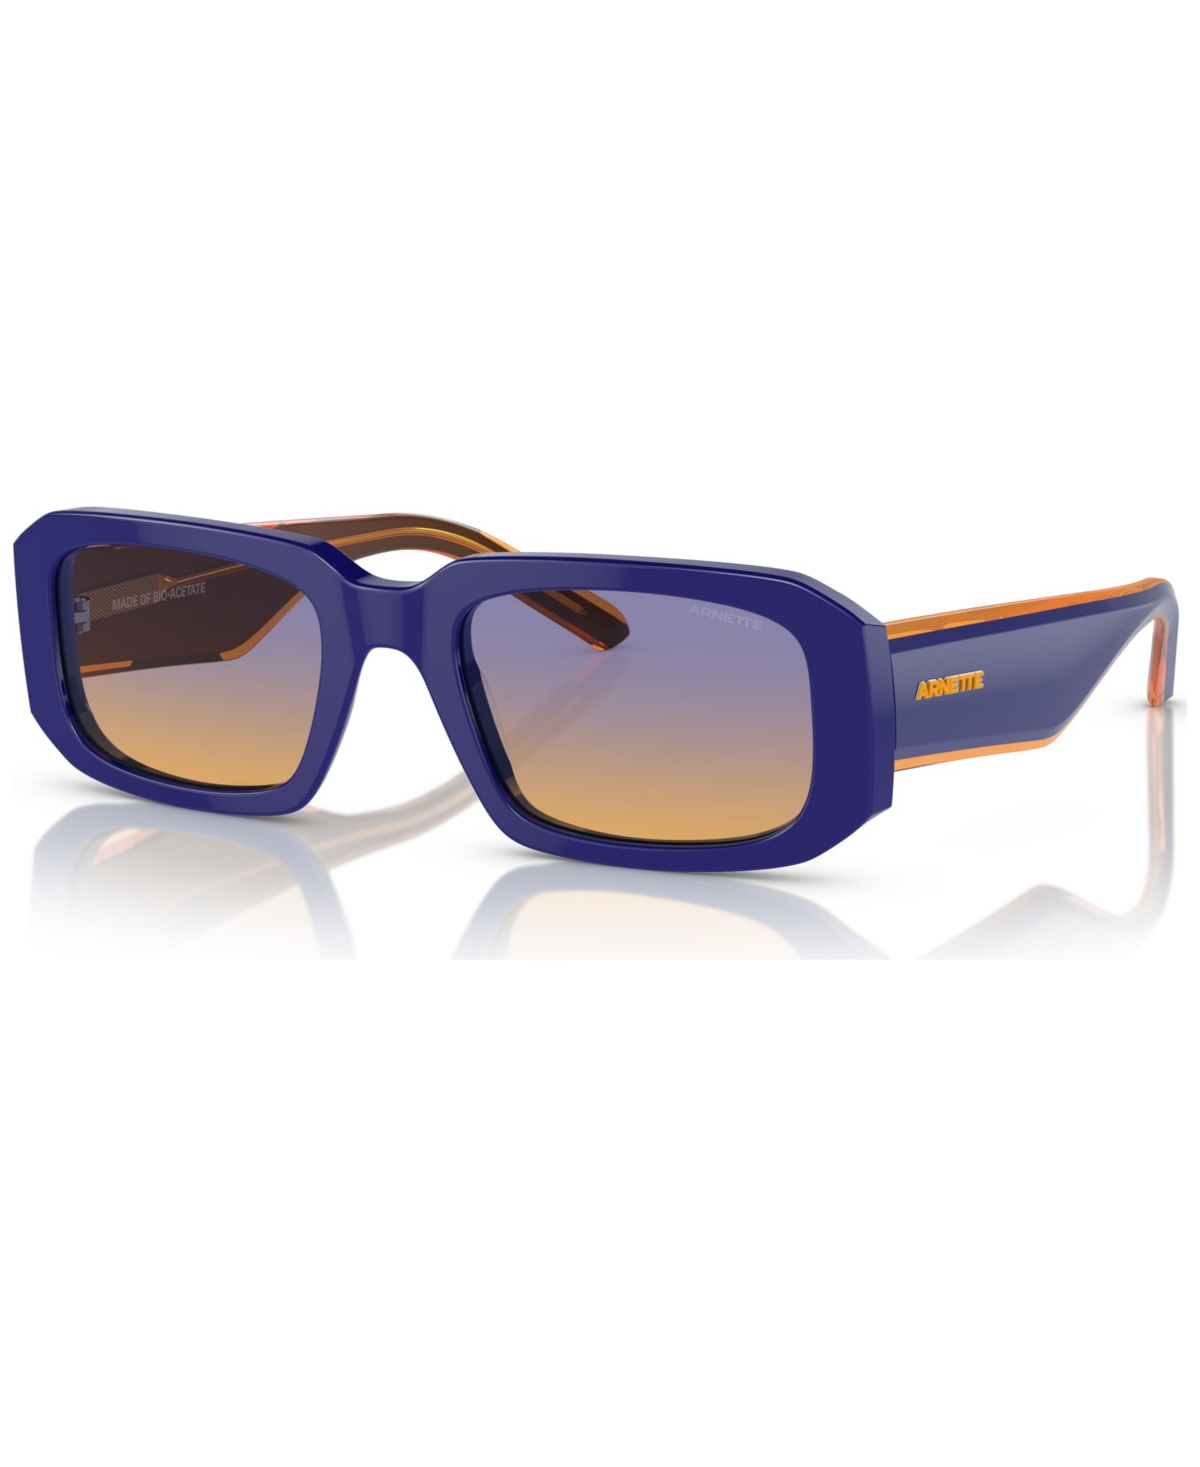 Men's Thekidd Sunglasses, AN431853-x 53 - Gray